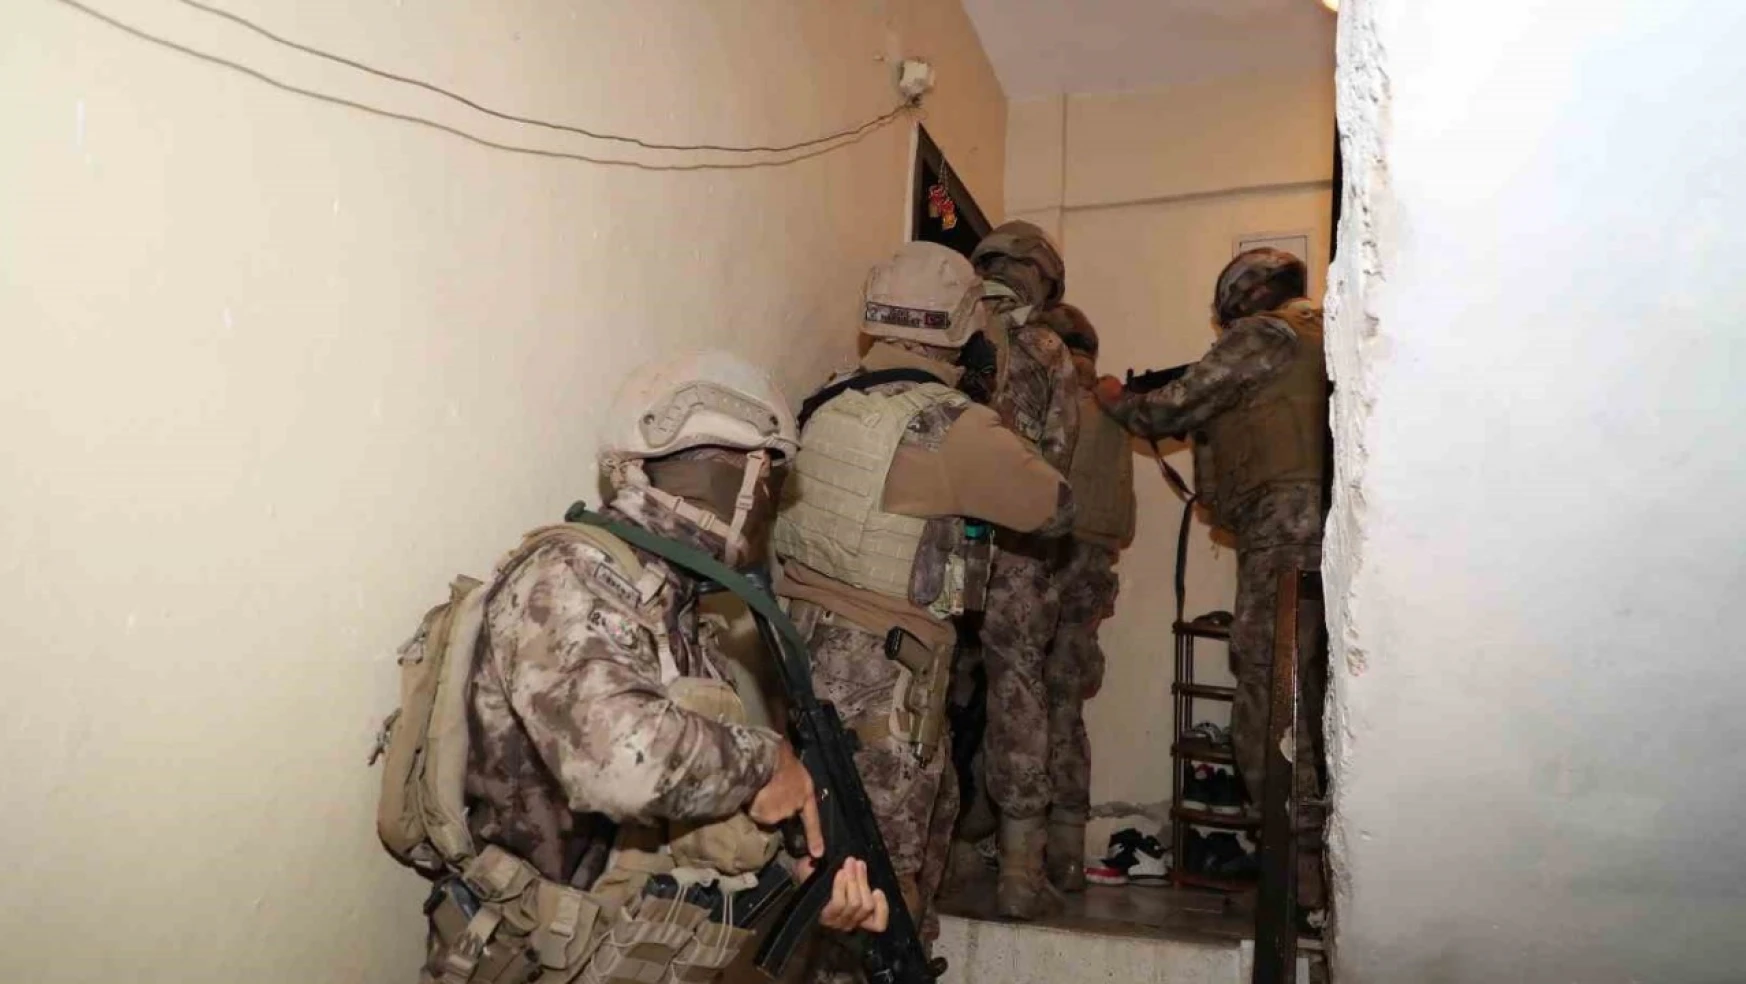 Mersin'de 'torbacı' operasyonu: 8 gözaltı